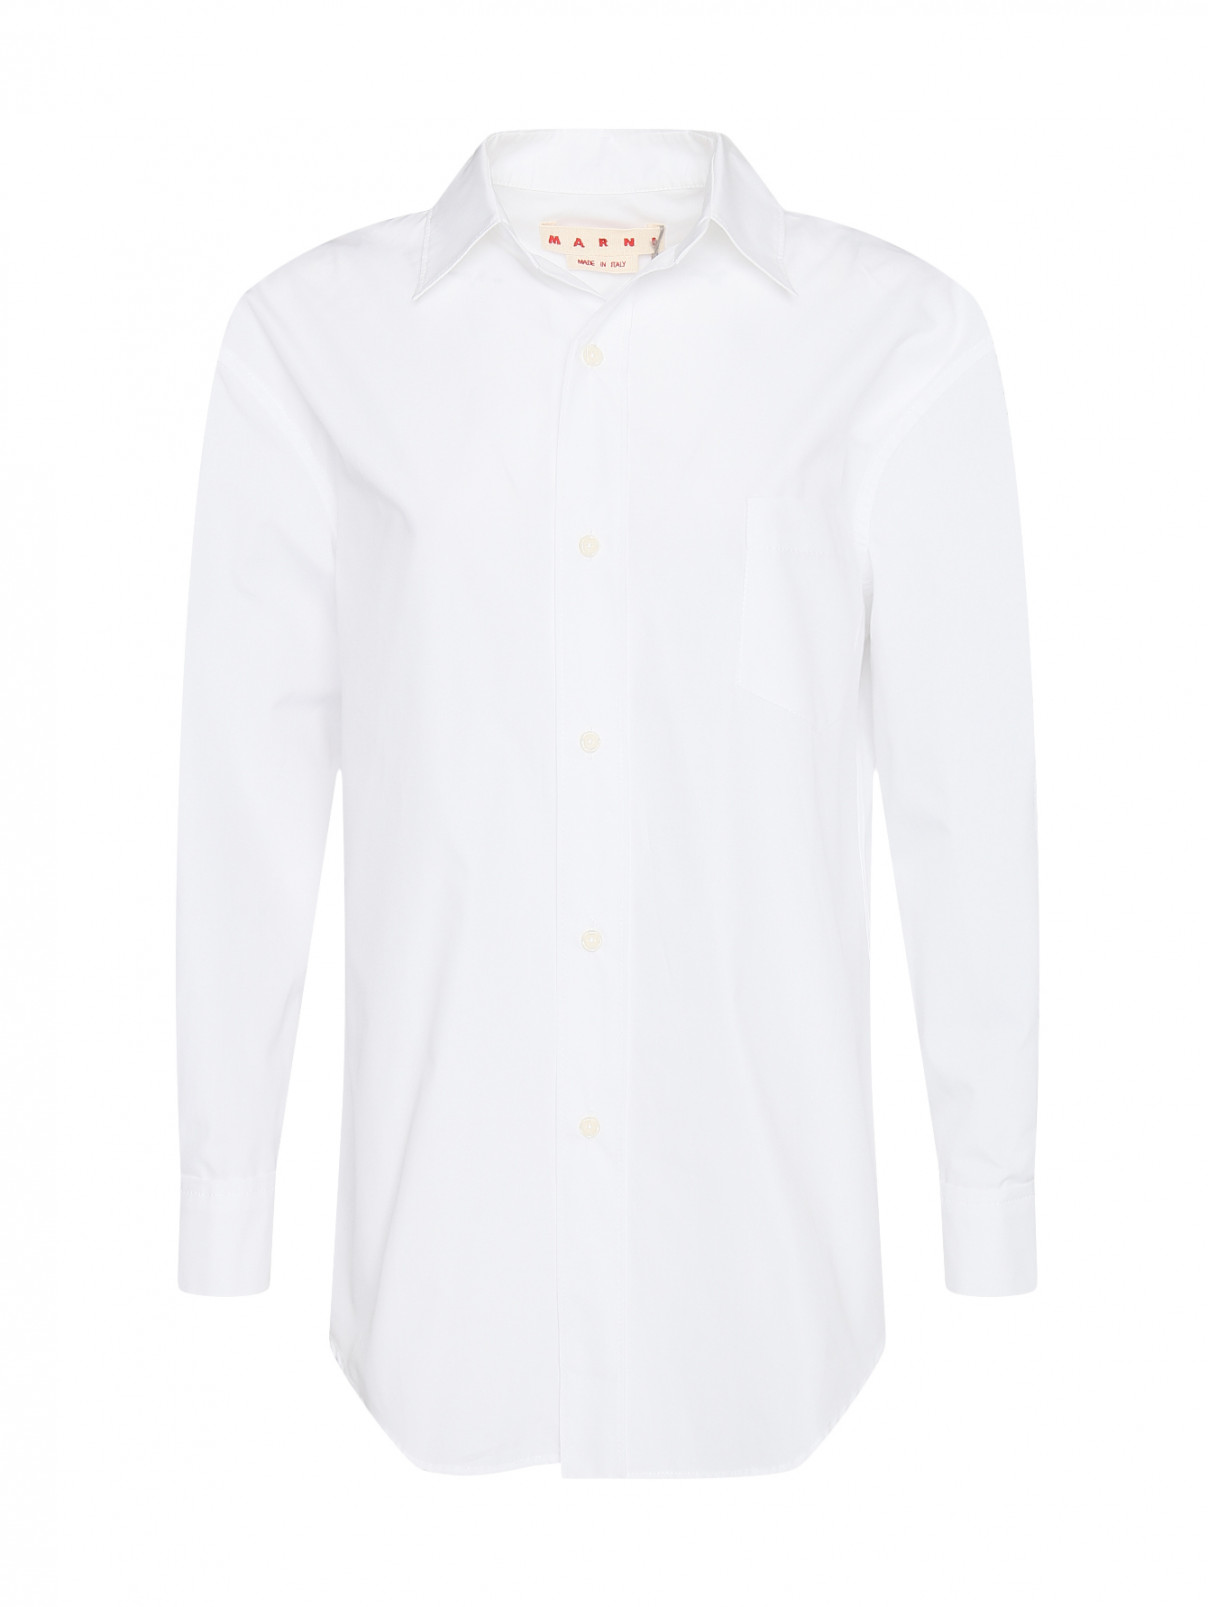 Рубашка из хлопка свободного кроя со складками на спине Marni  –  Общий вид  – Цвет:  Белый